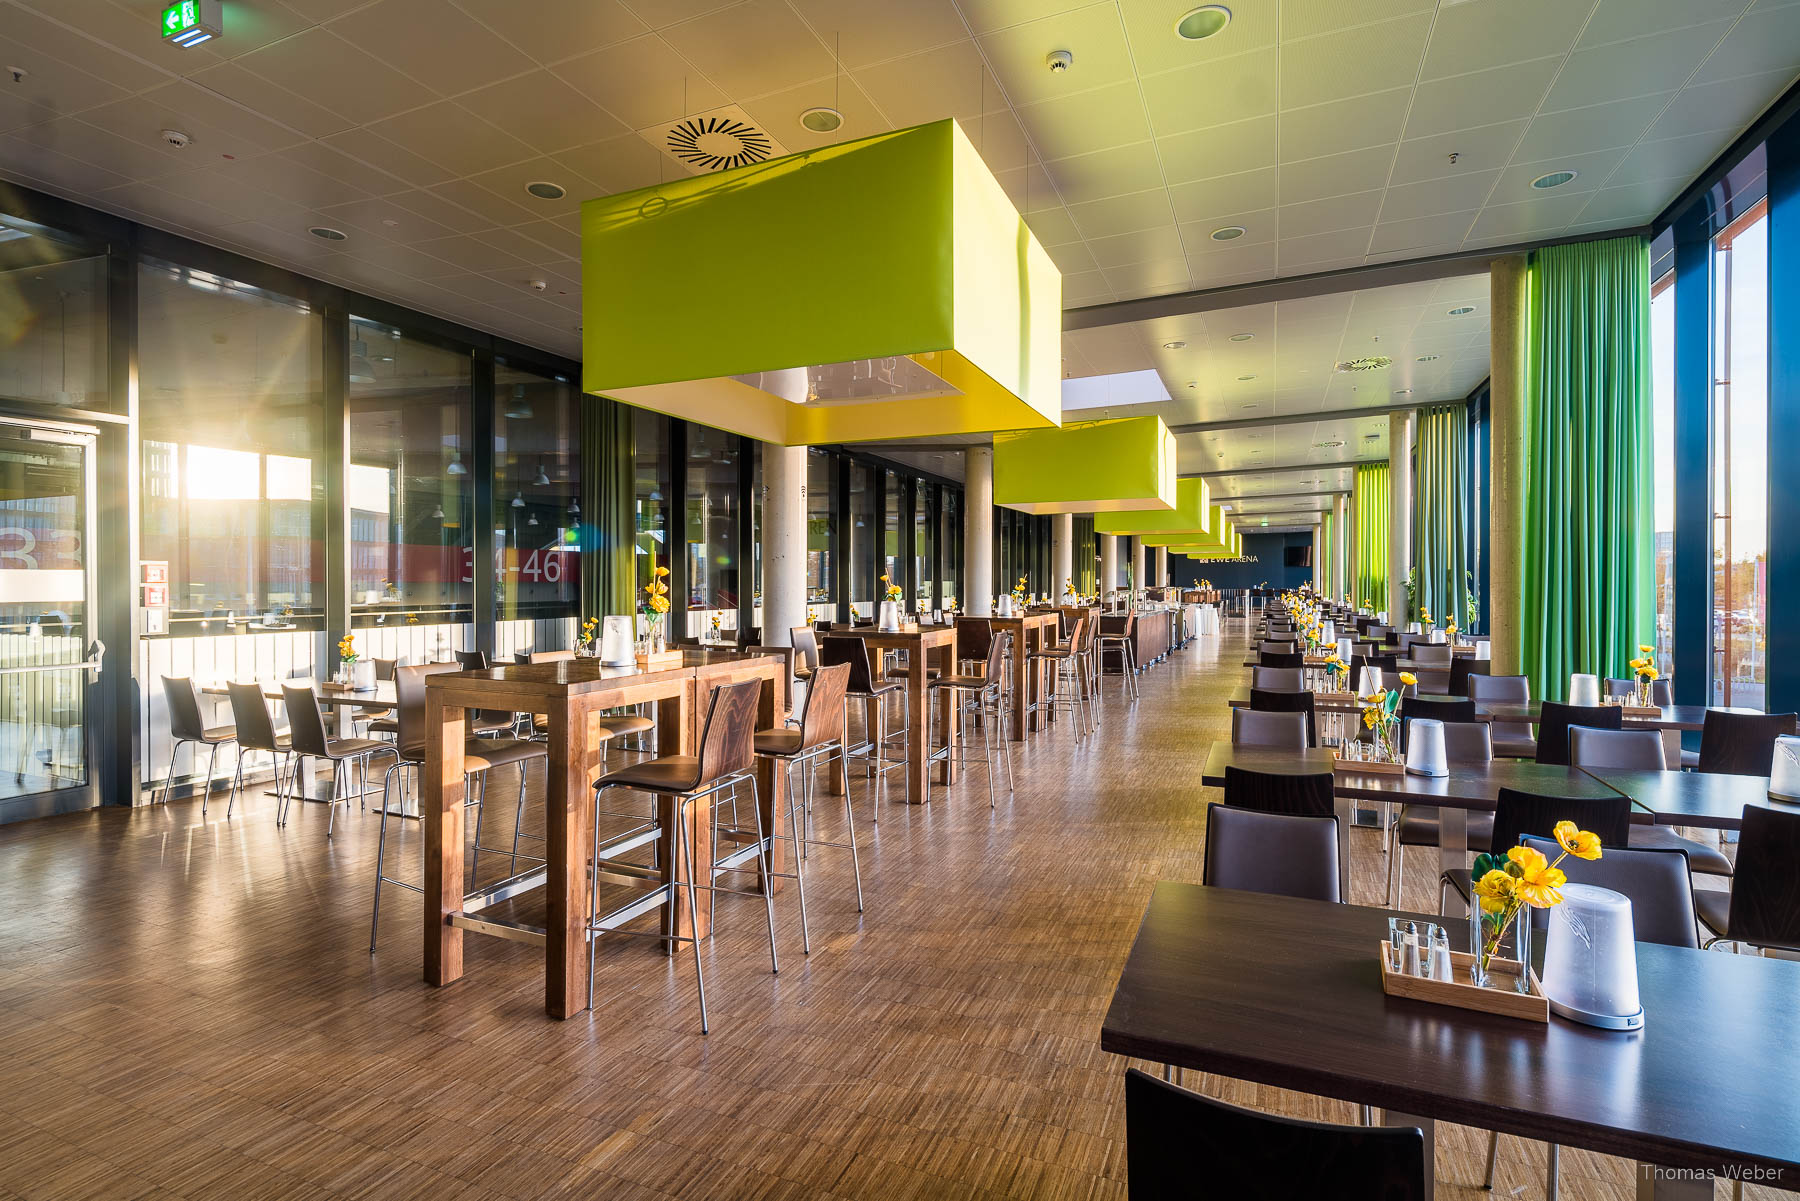 Fotos des Restaurants der EWE-Arena in Oldenburg, Thomas Weber, Fotograf Oldenburg